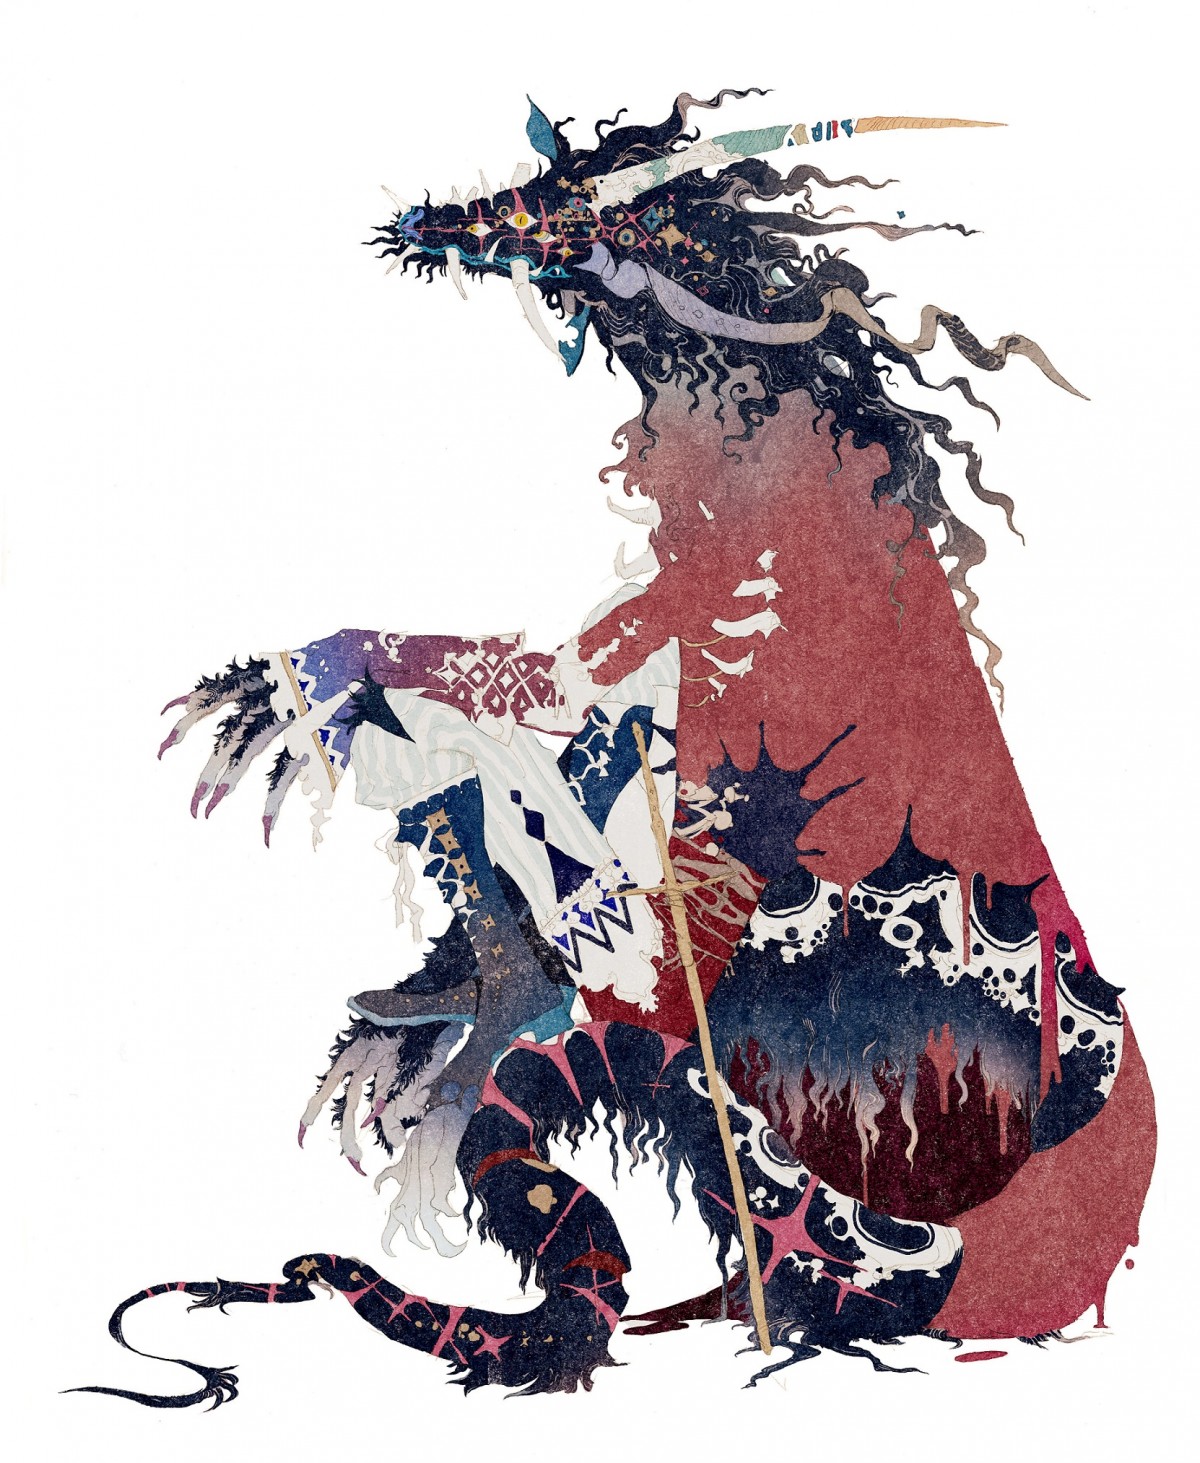 『竜とそばかすの姫』新ビジュアル公開　夏の入道雲から一転、星空の下に歌姫ベルと竜